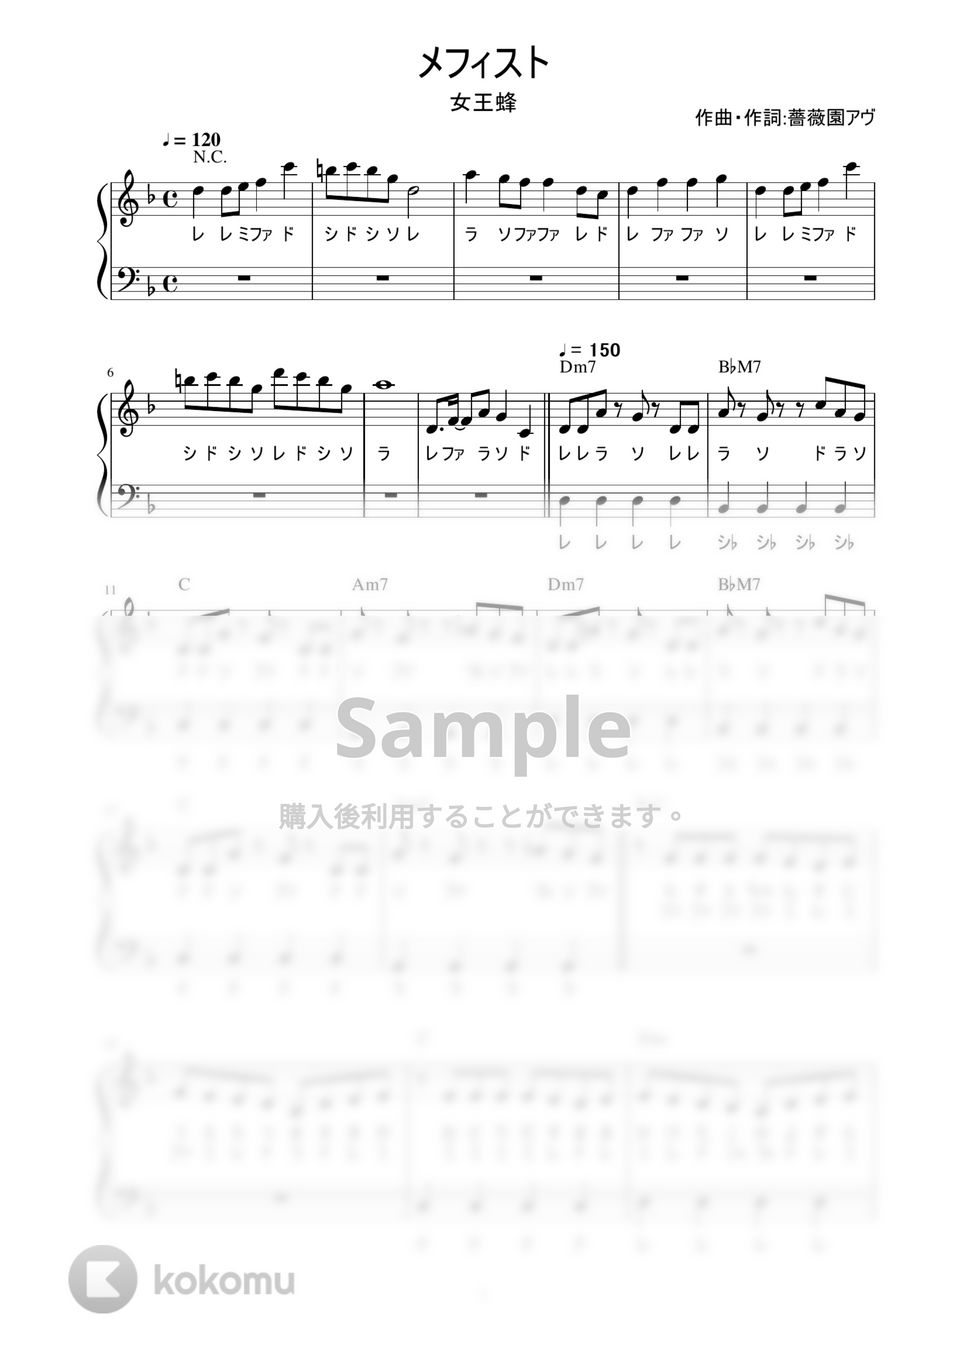 女王蜂 - メフィスト (かんたん / 歌詞付き / ドレミ付き / 初心者) by piano.tokyo